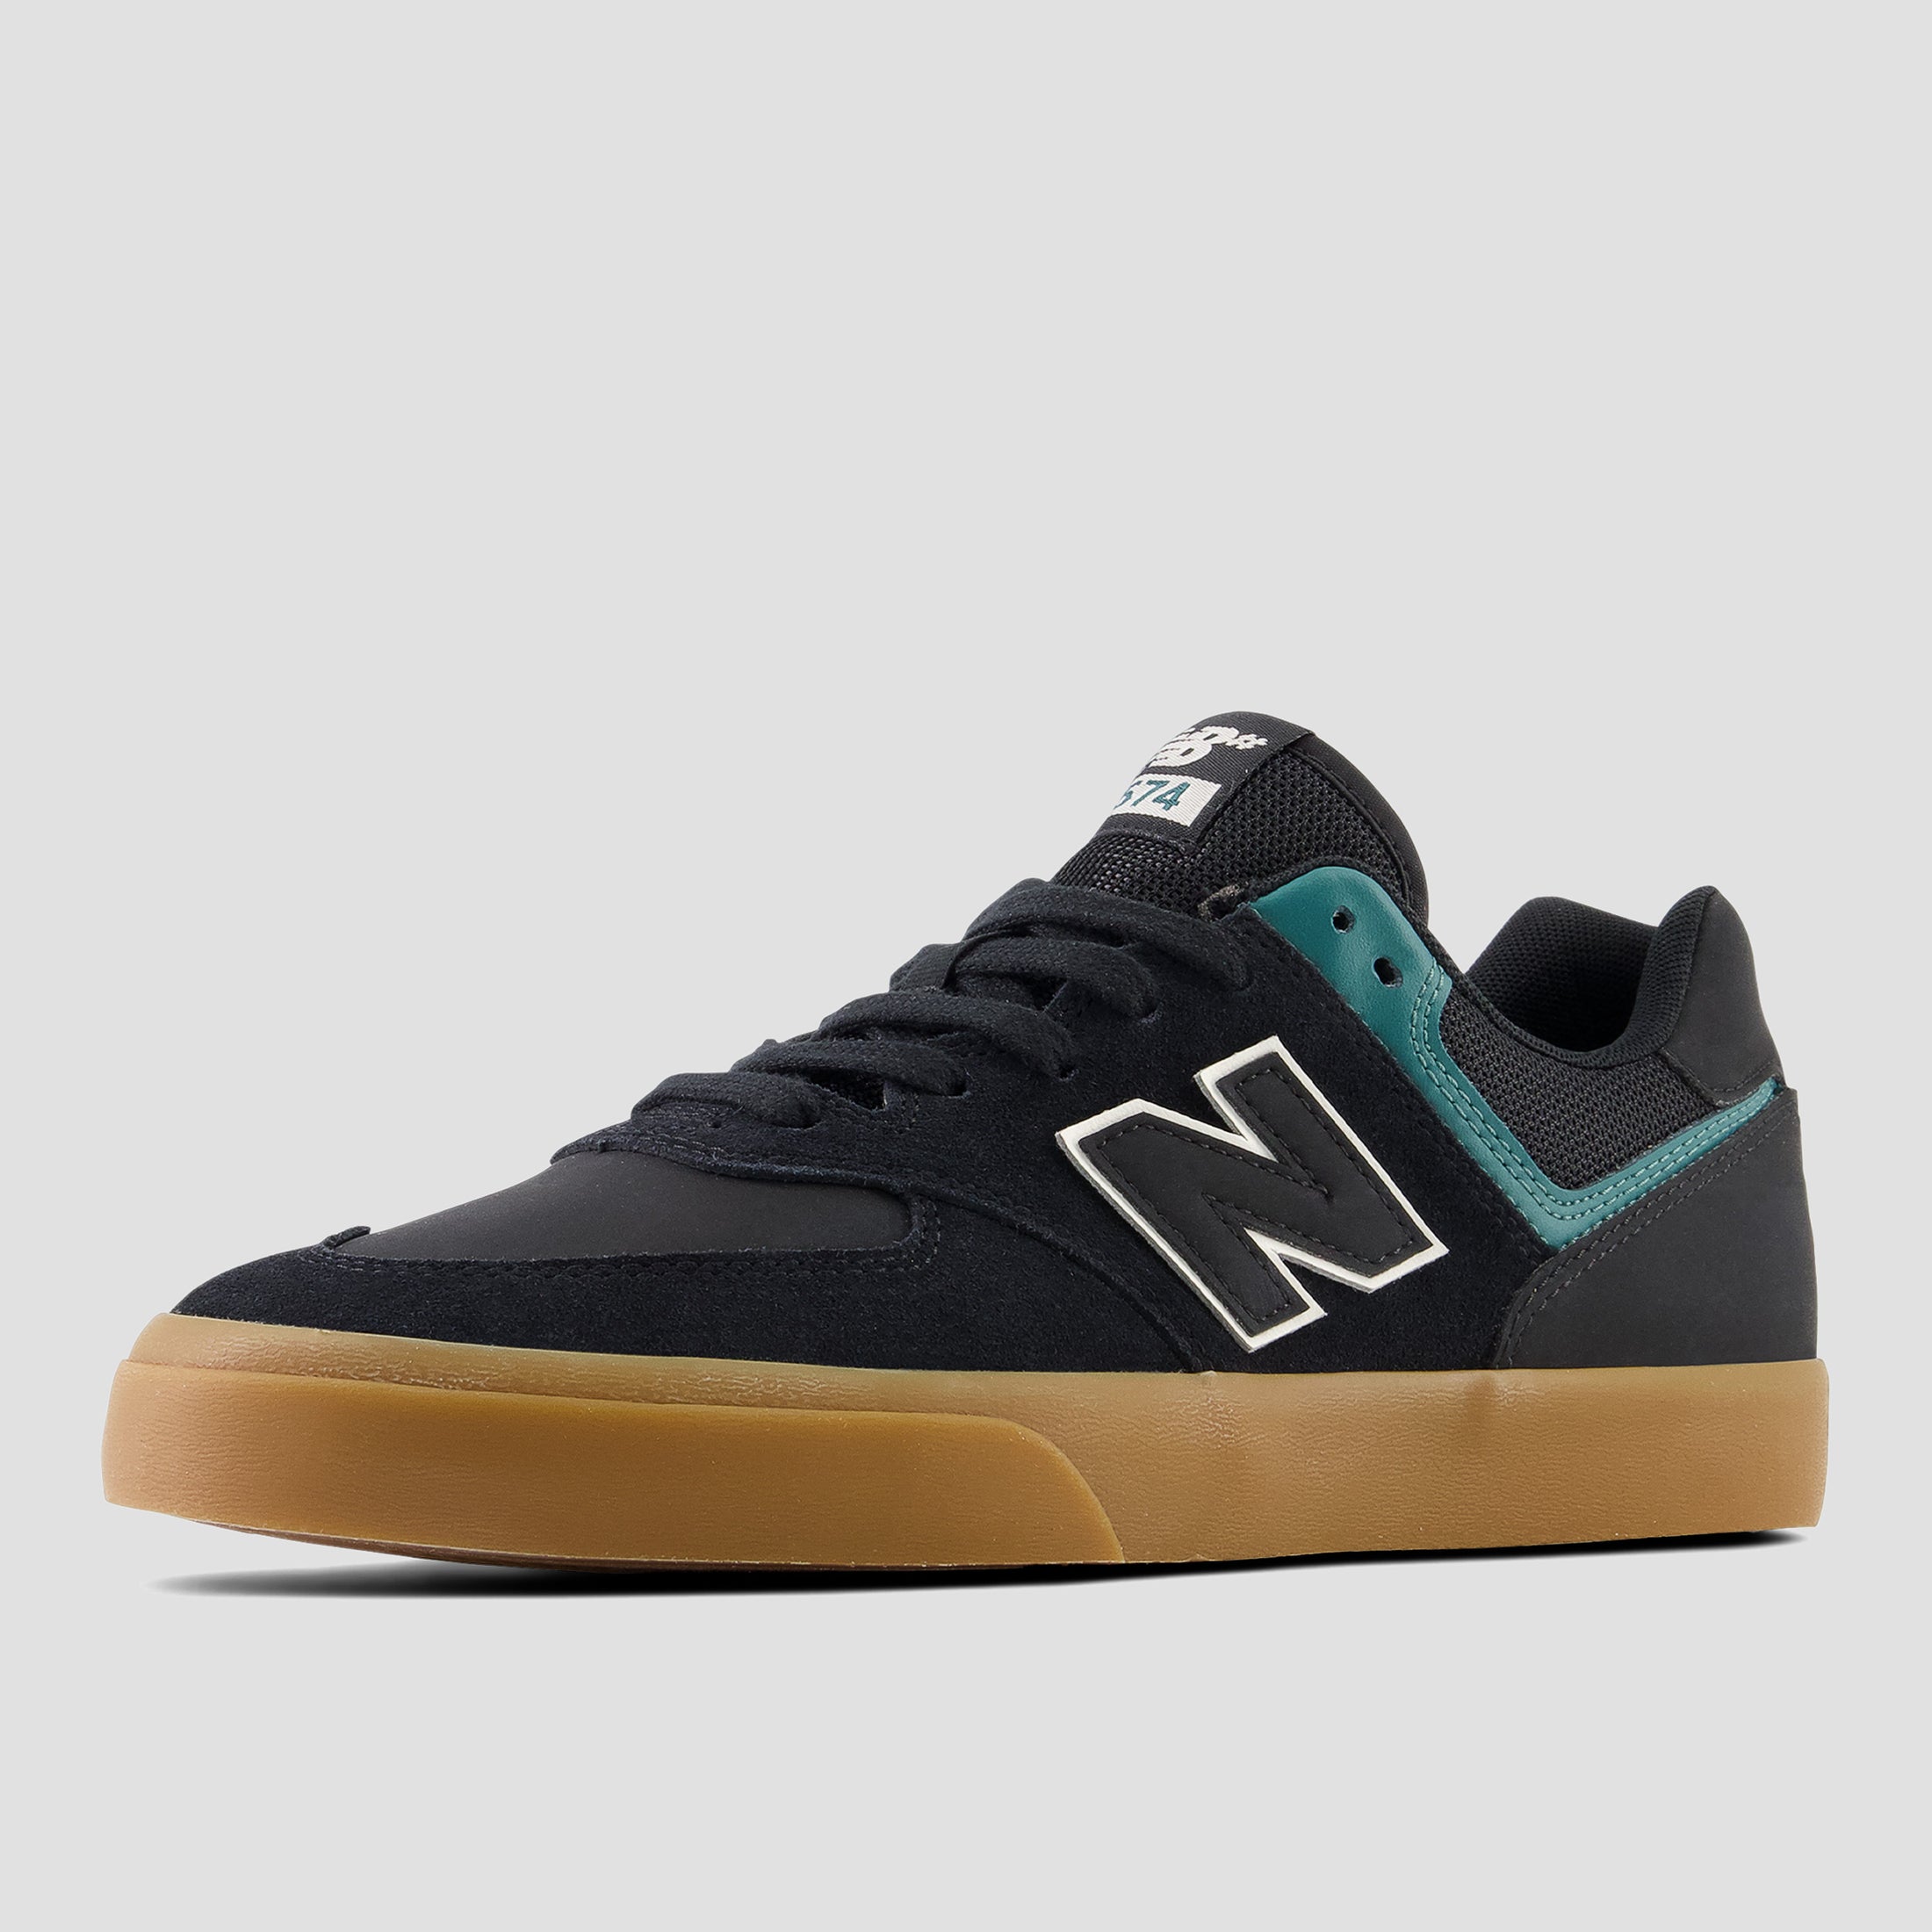 New Balance 574 Shoes Black / Vintage Teal